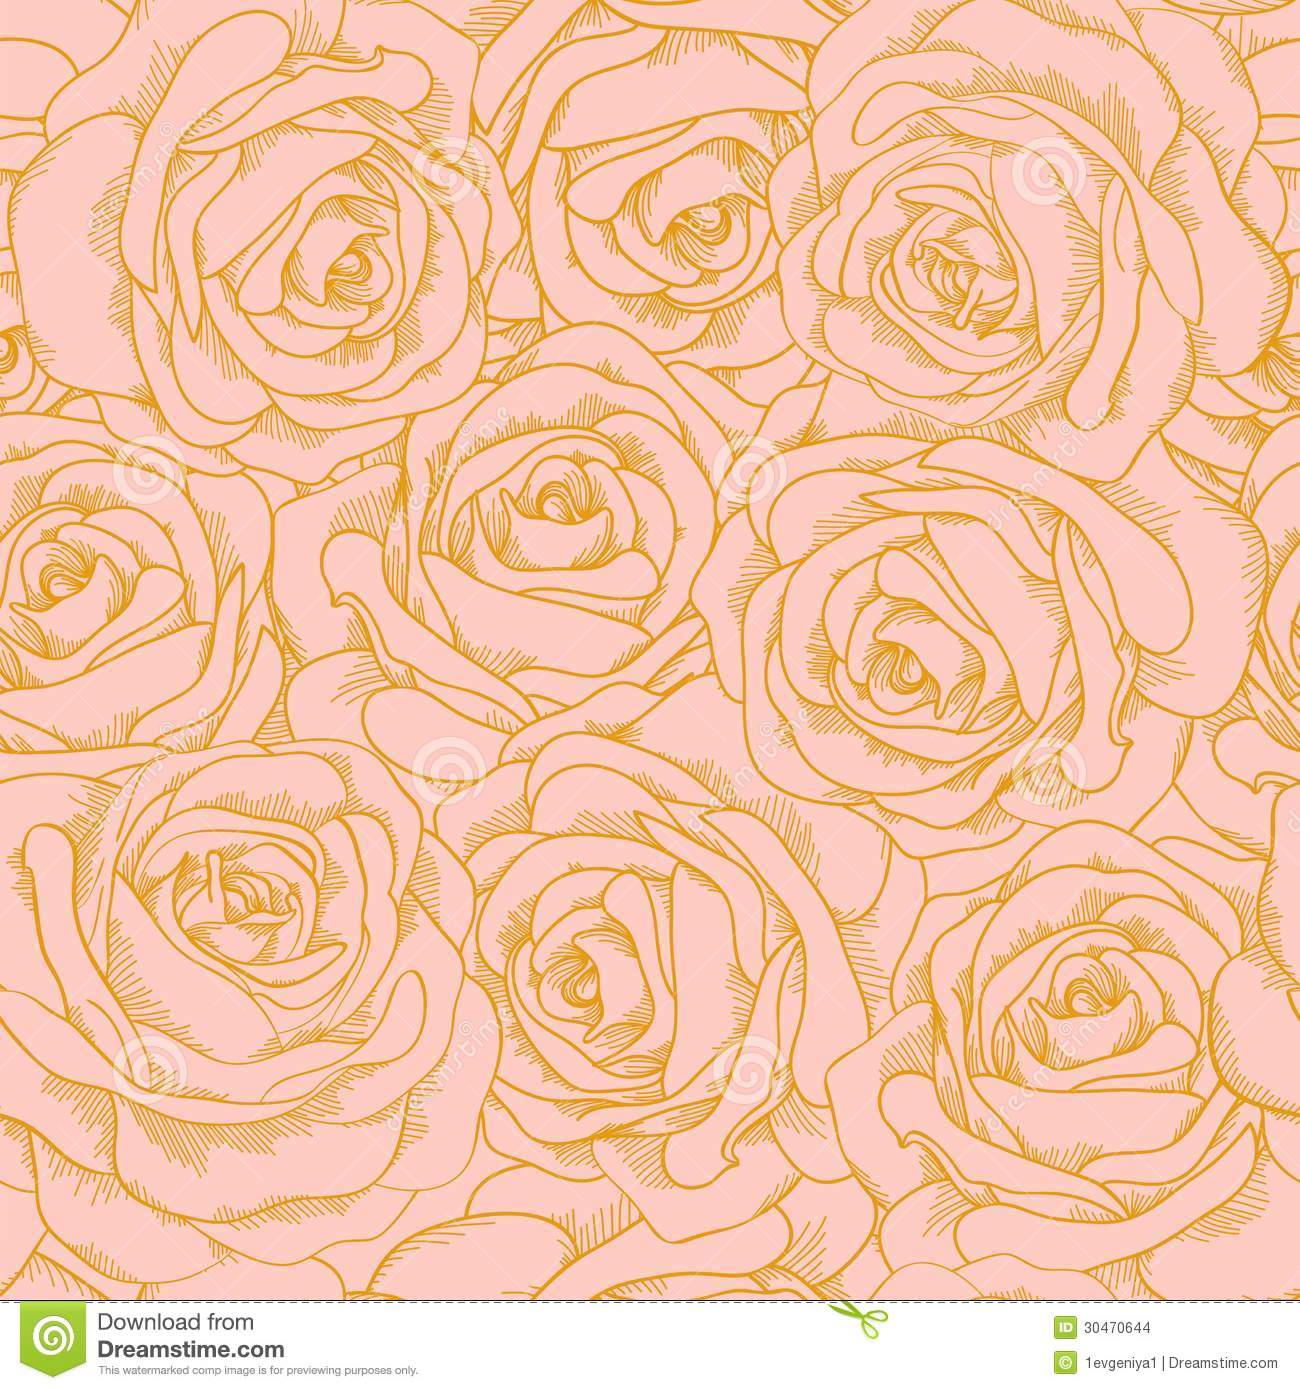 42+] Rose Gold Wallpaper - WallpaperSafari